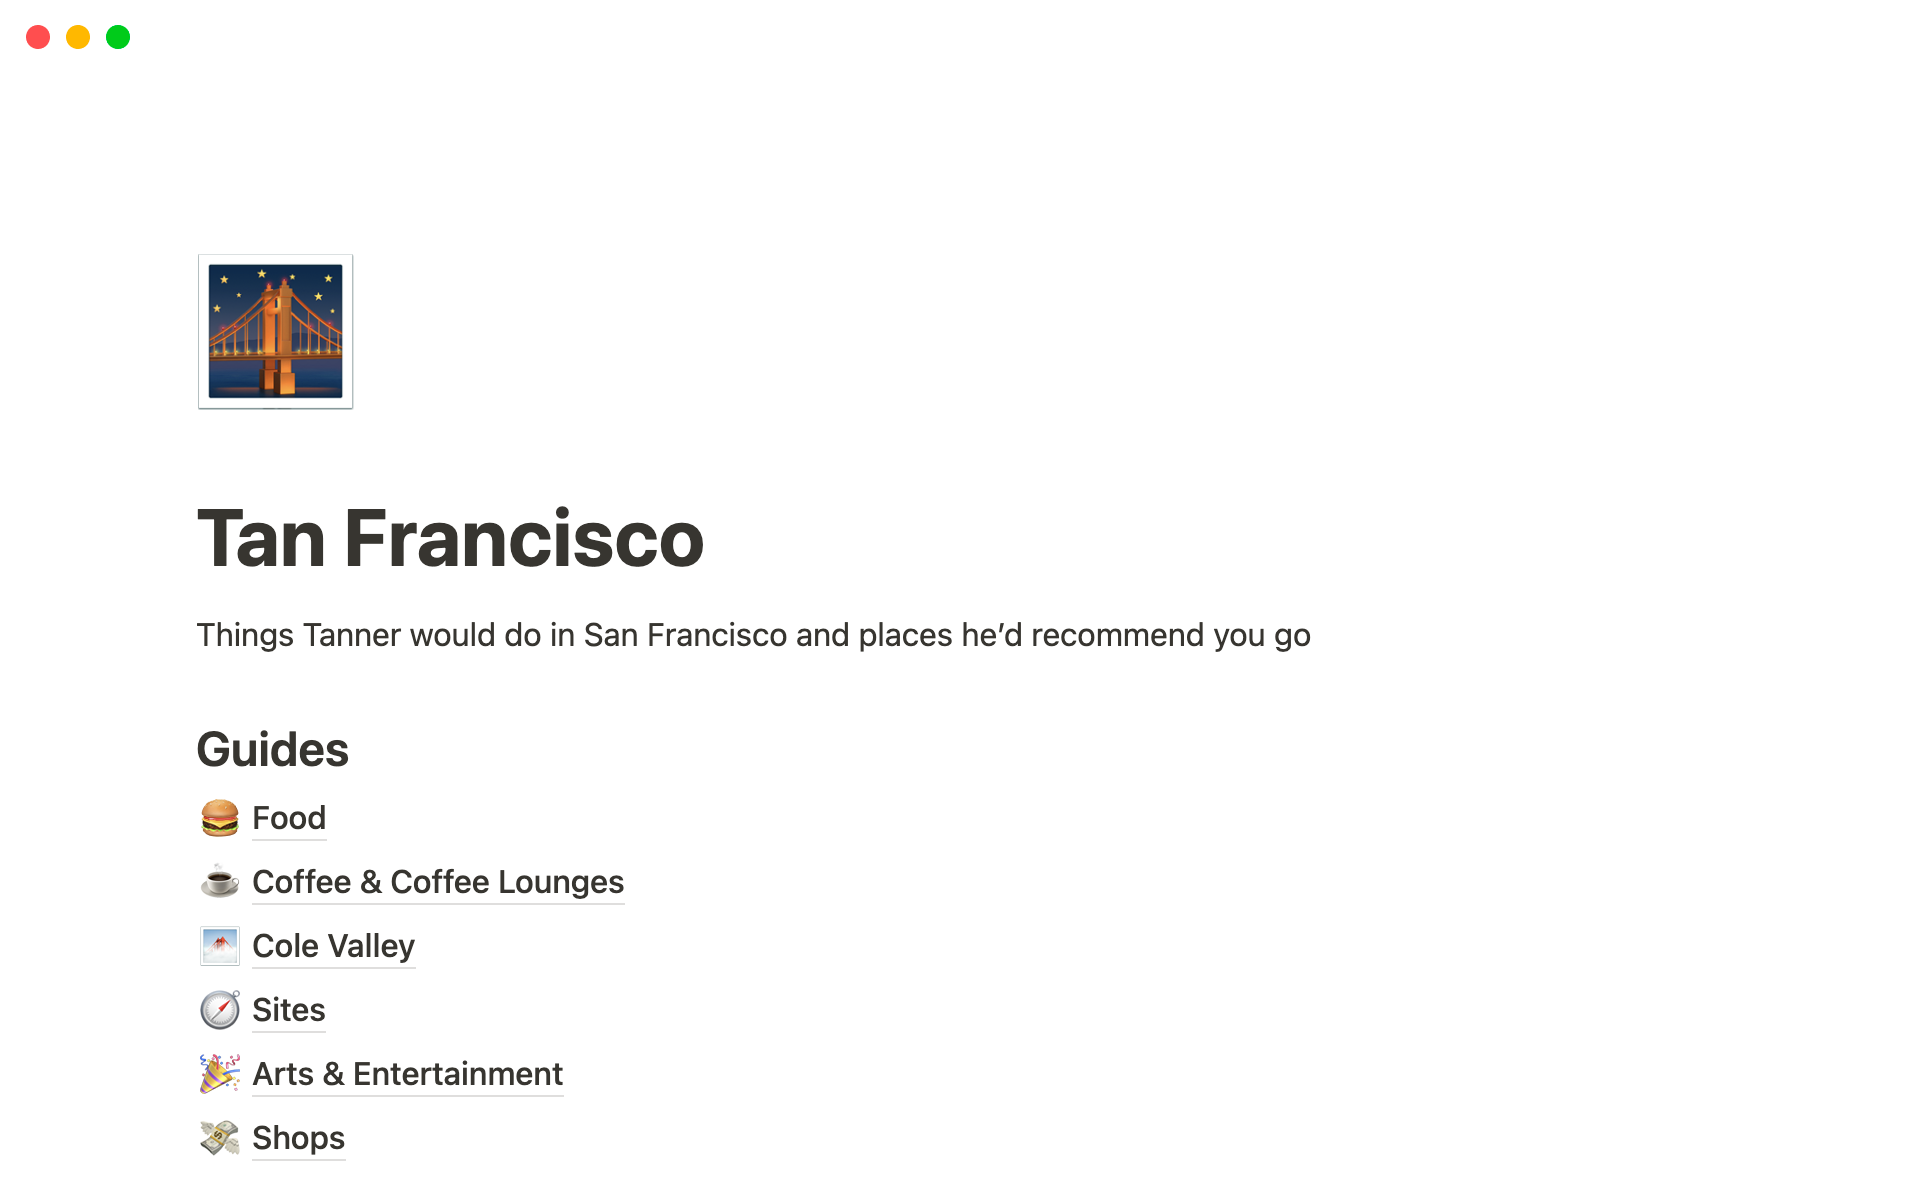 Vista previa de plantilla para Tan Francisco — Tanner's Guide To San Francisco